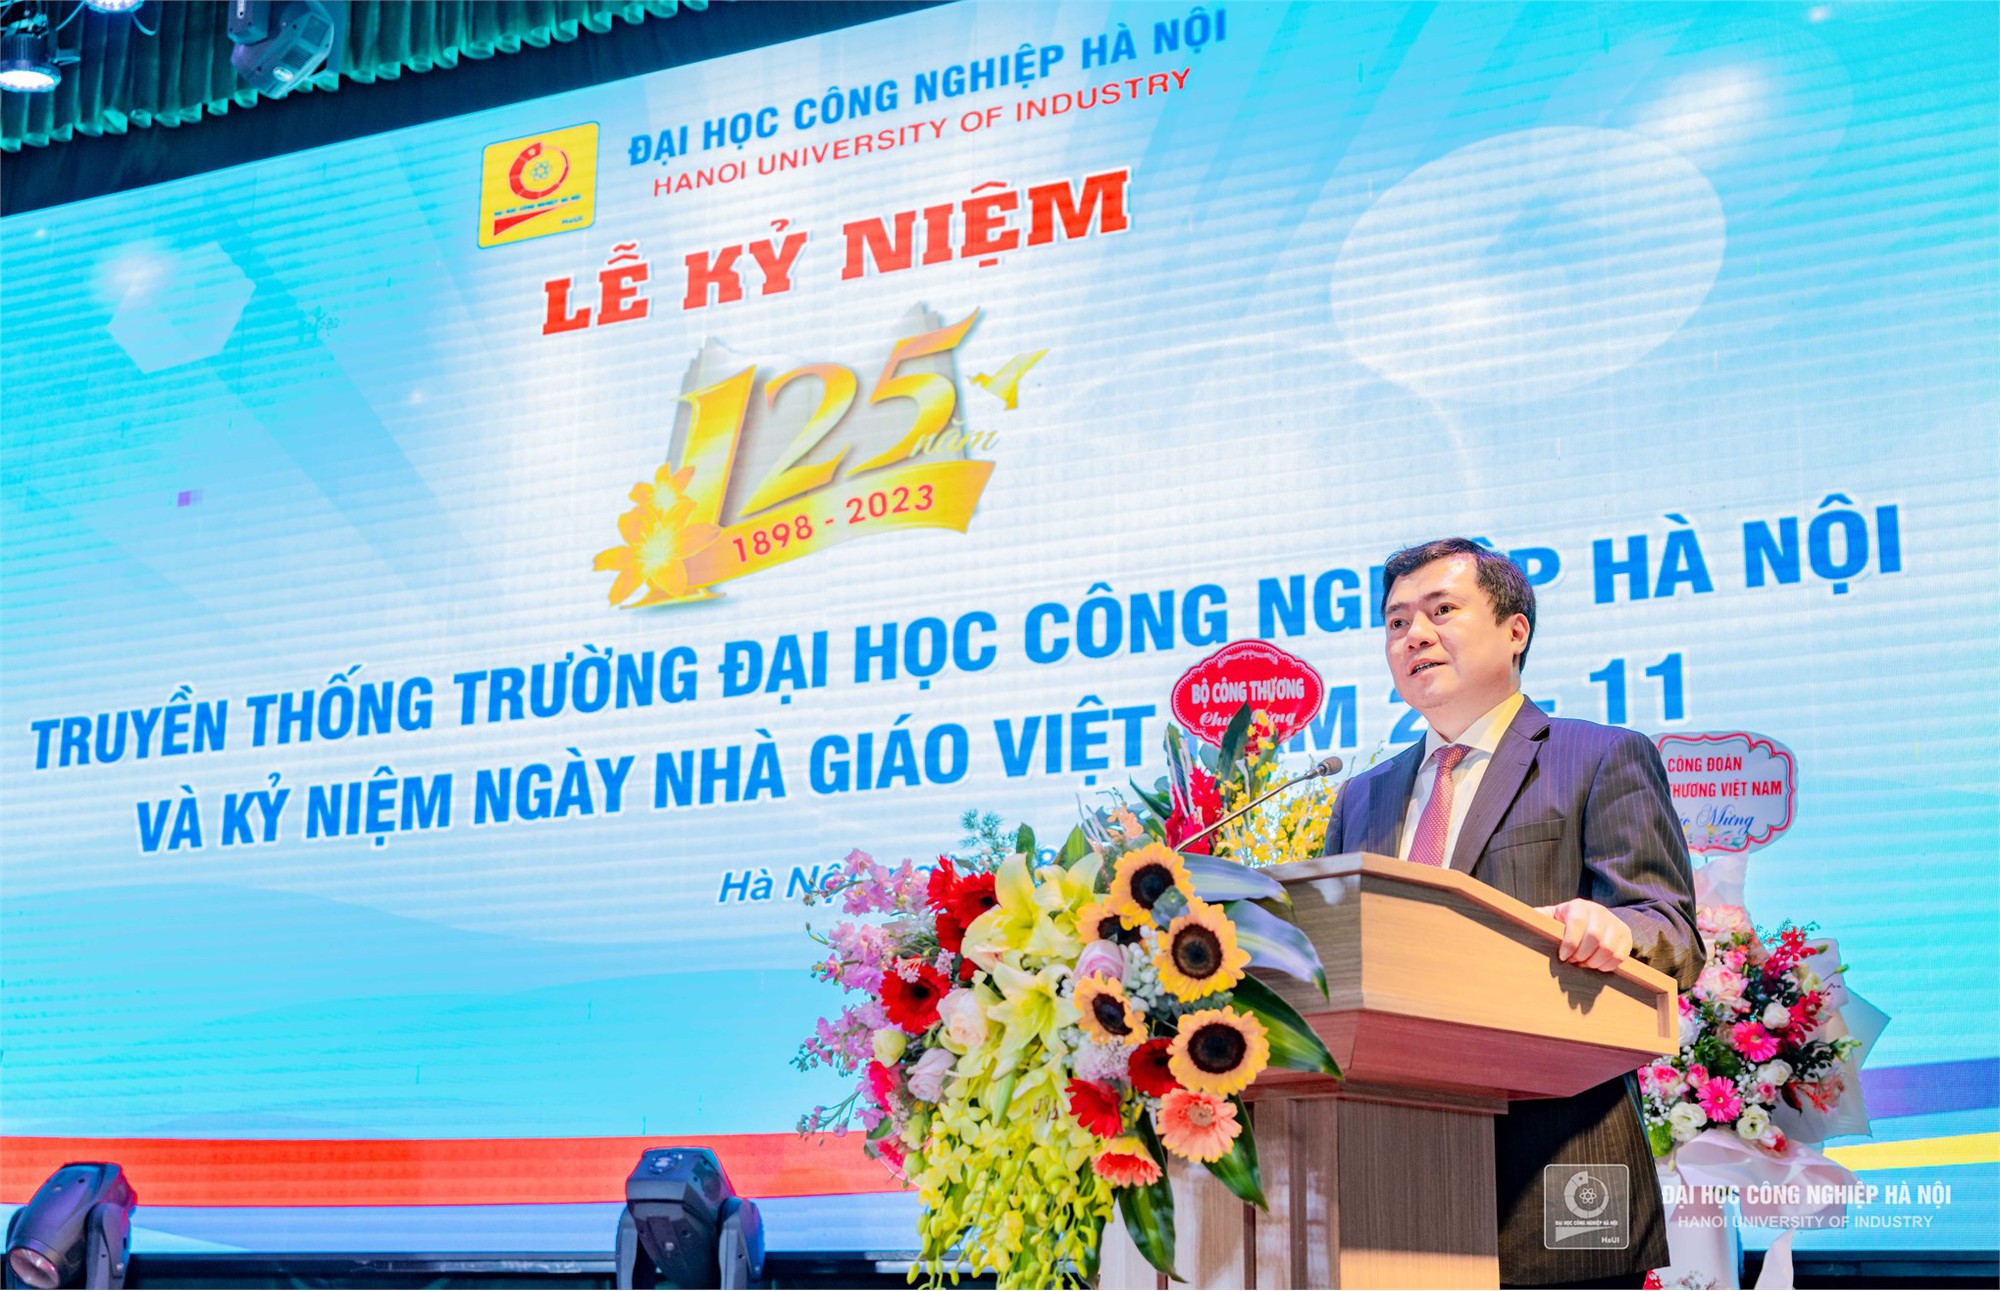 Lễ kỷ niệm 125 năm truyền thống Trường Đại học Công nghiệp Hà Nội (1898 – 2023) và 41 năm Ngày Nhà giáo Việt Nam 20/11 - Ảnh 2.